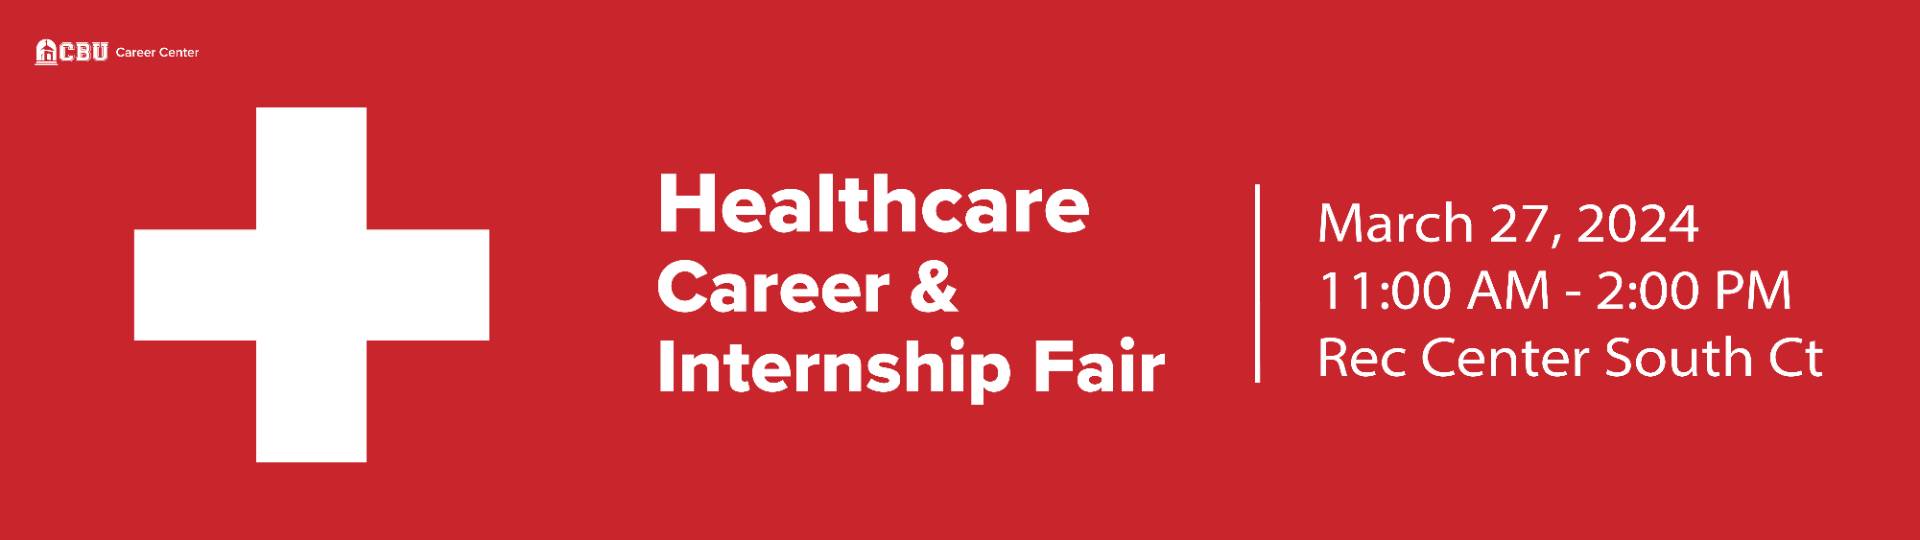 healthcare career and internship fair